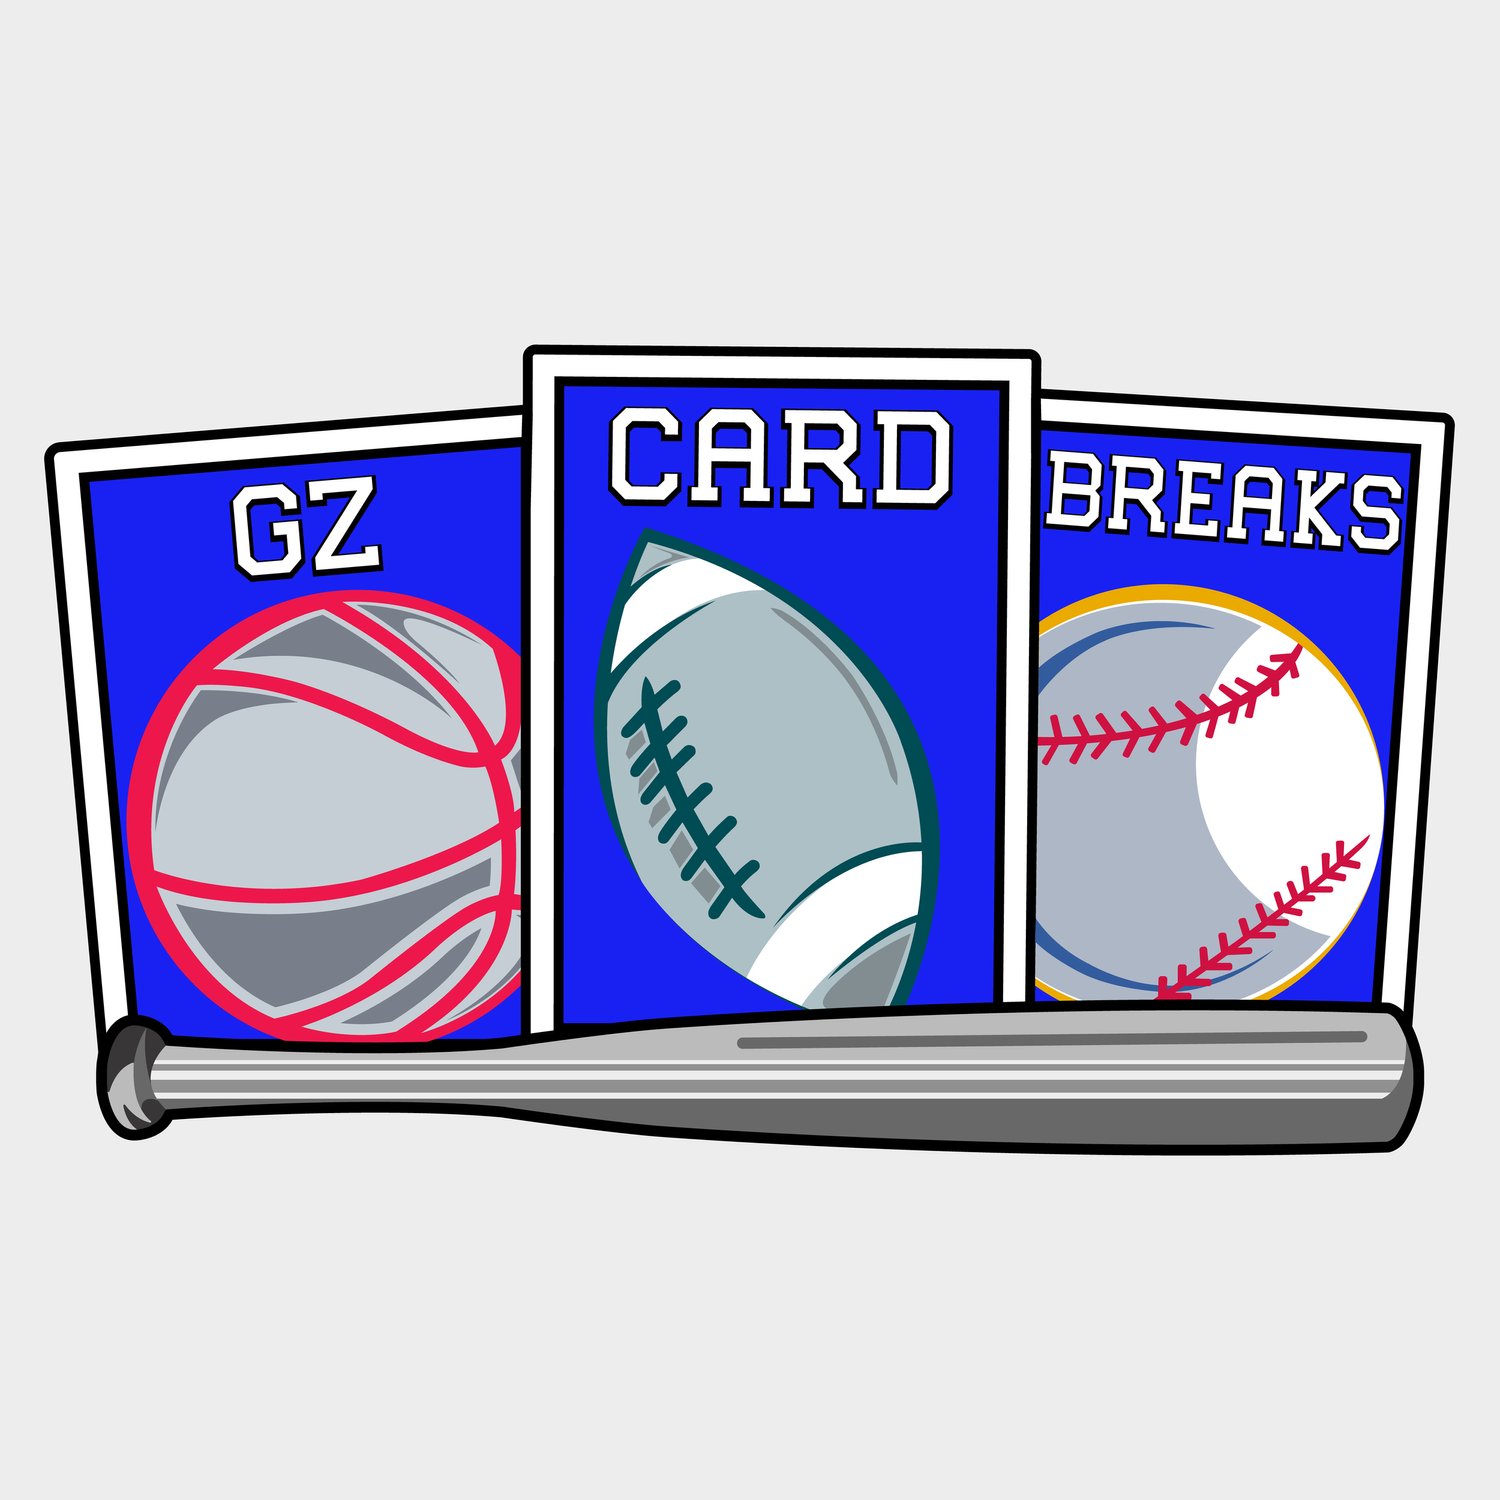 GZ Card Breaks